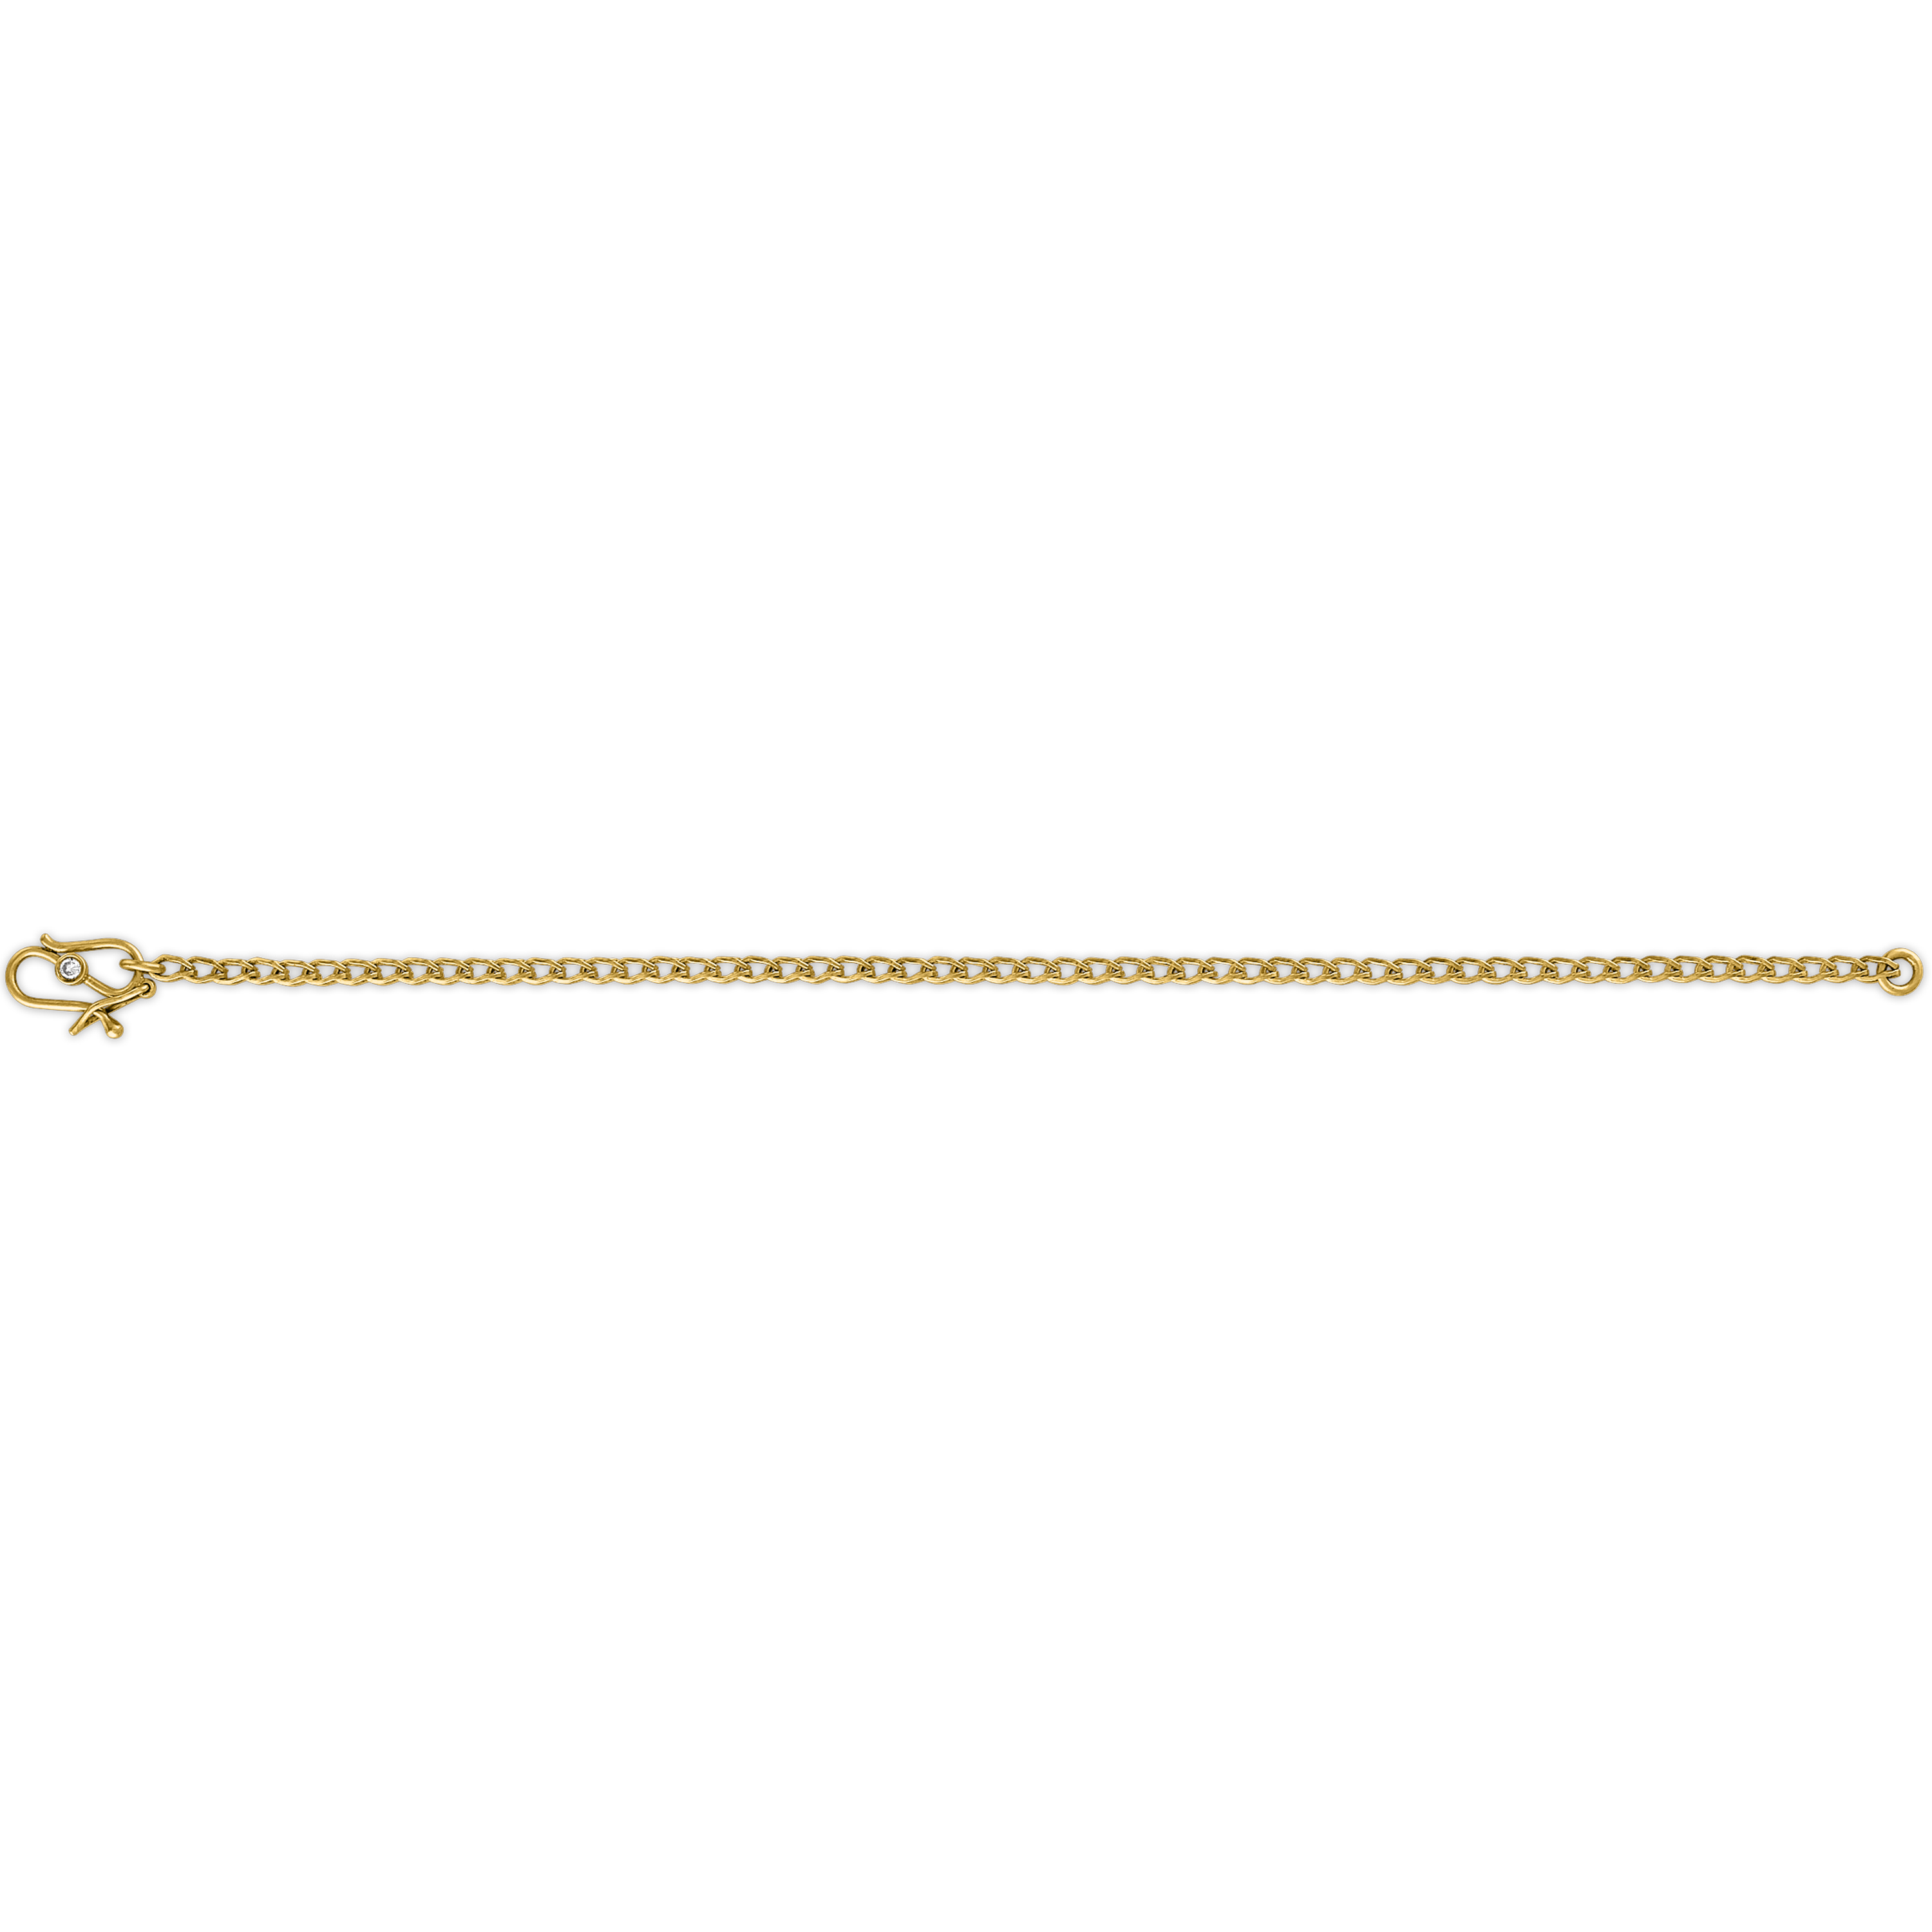 Solo Loop-in-loop Chain Bracelet